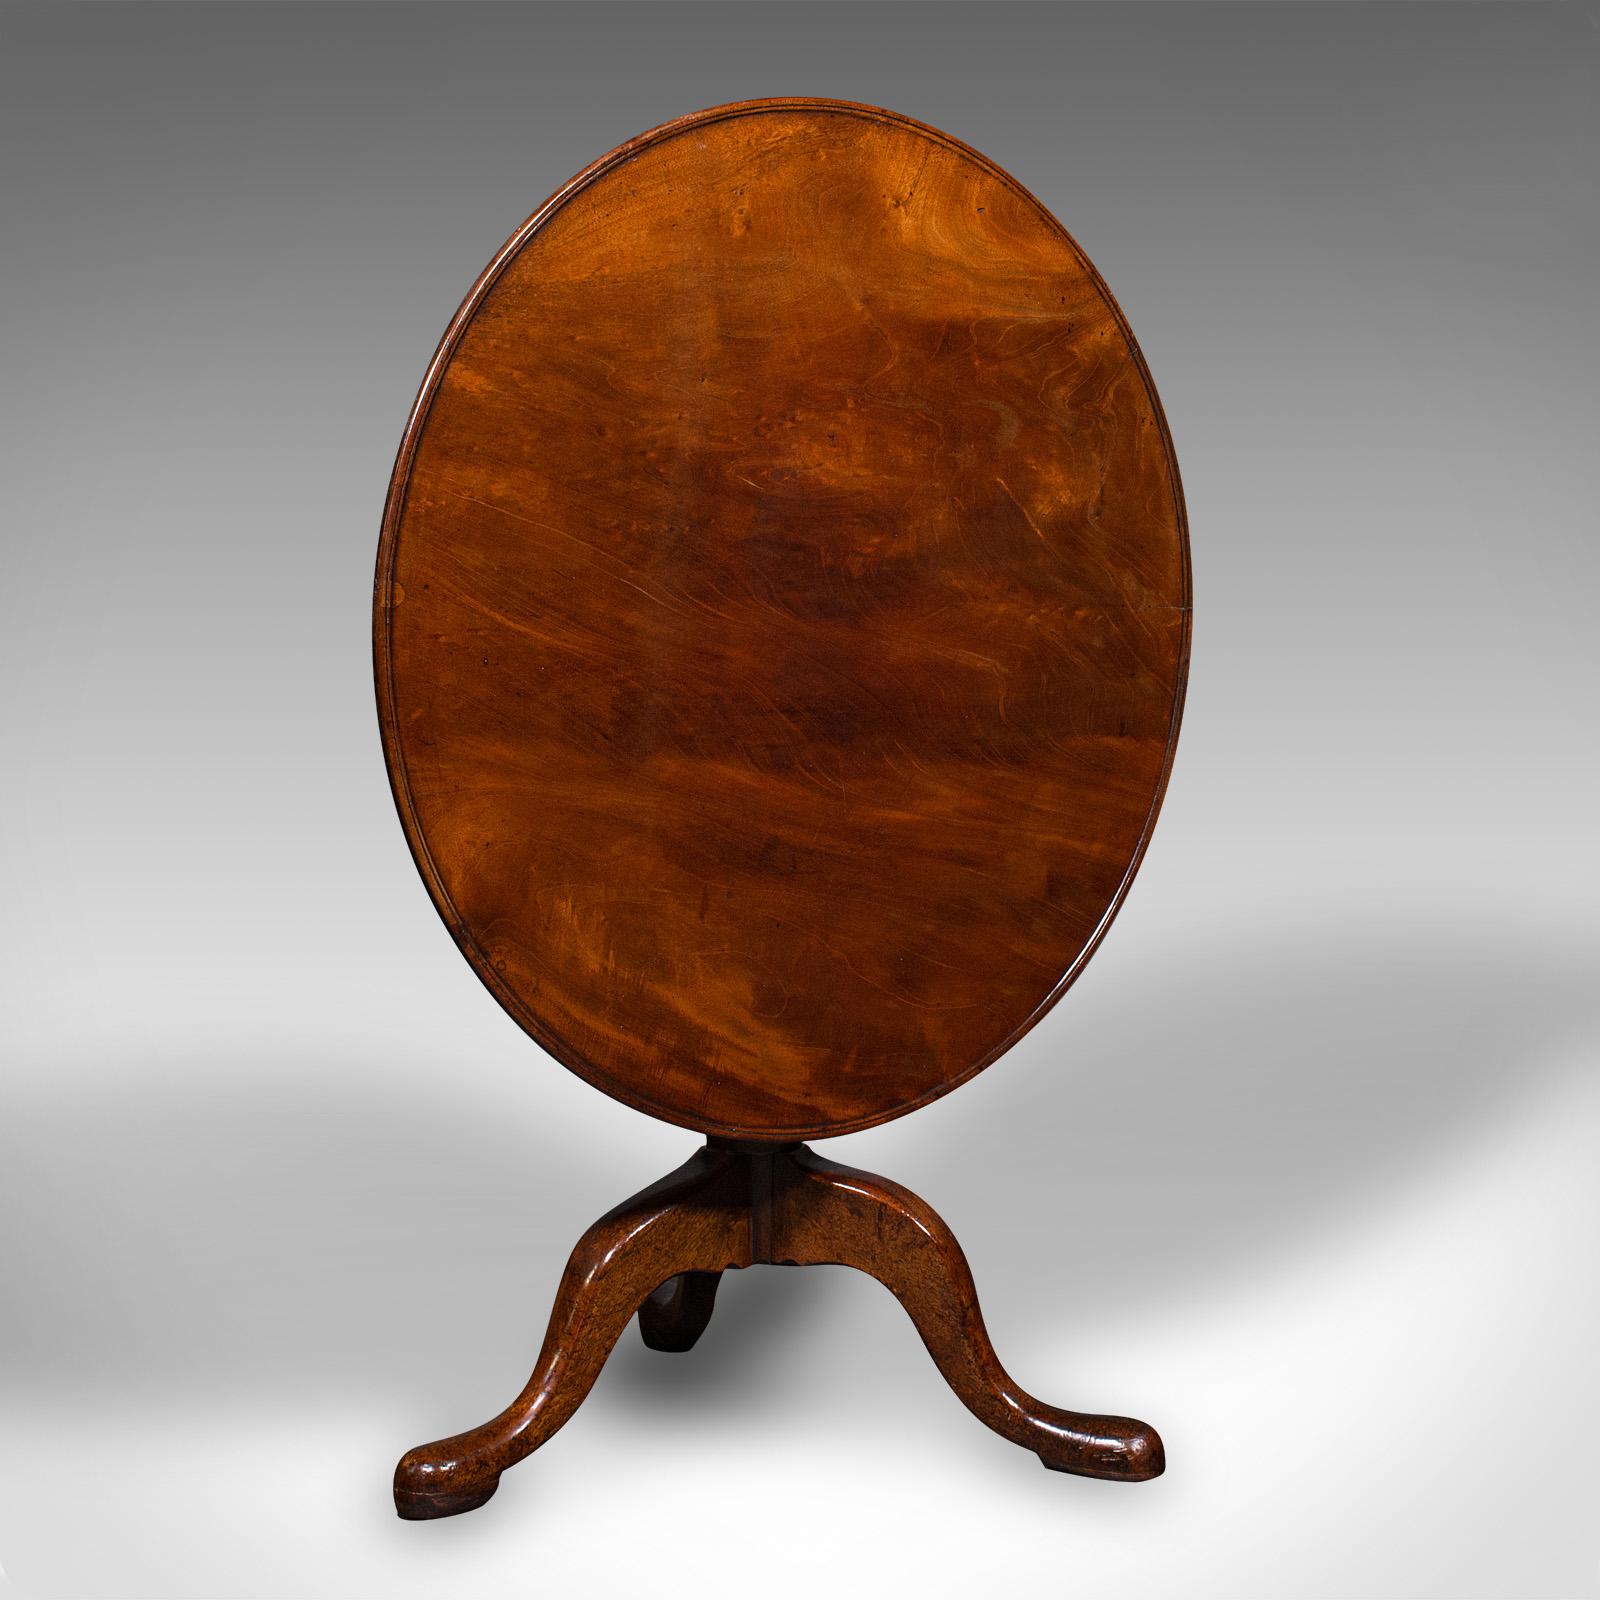 Dies ist ein breiter antiker Tisch mit kippbarer Platte. Ein englischer Empfangs- oder Frühstückstisch aus Mahagoni, aus der georgianischen Zeit, um 1780.

Auffälliger Tisch mit großzügigen Proportionen und hervorragender Maserung
Zeigt eine